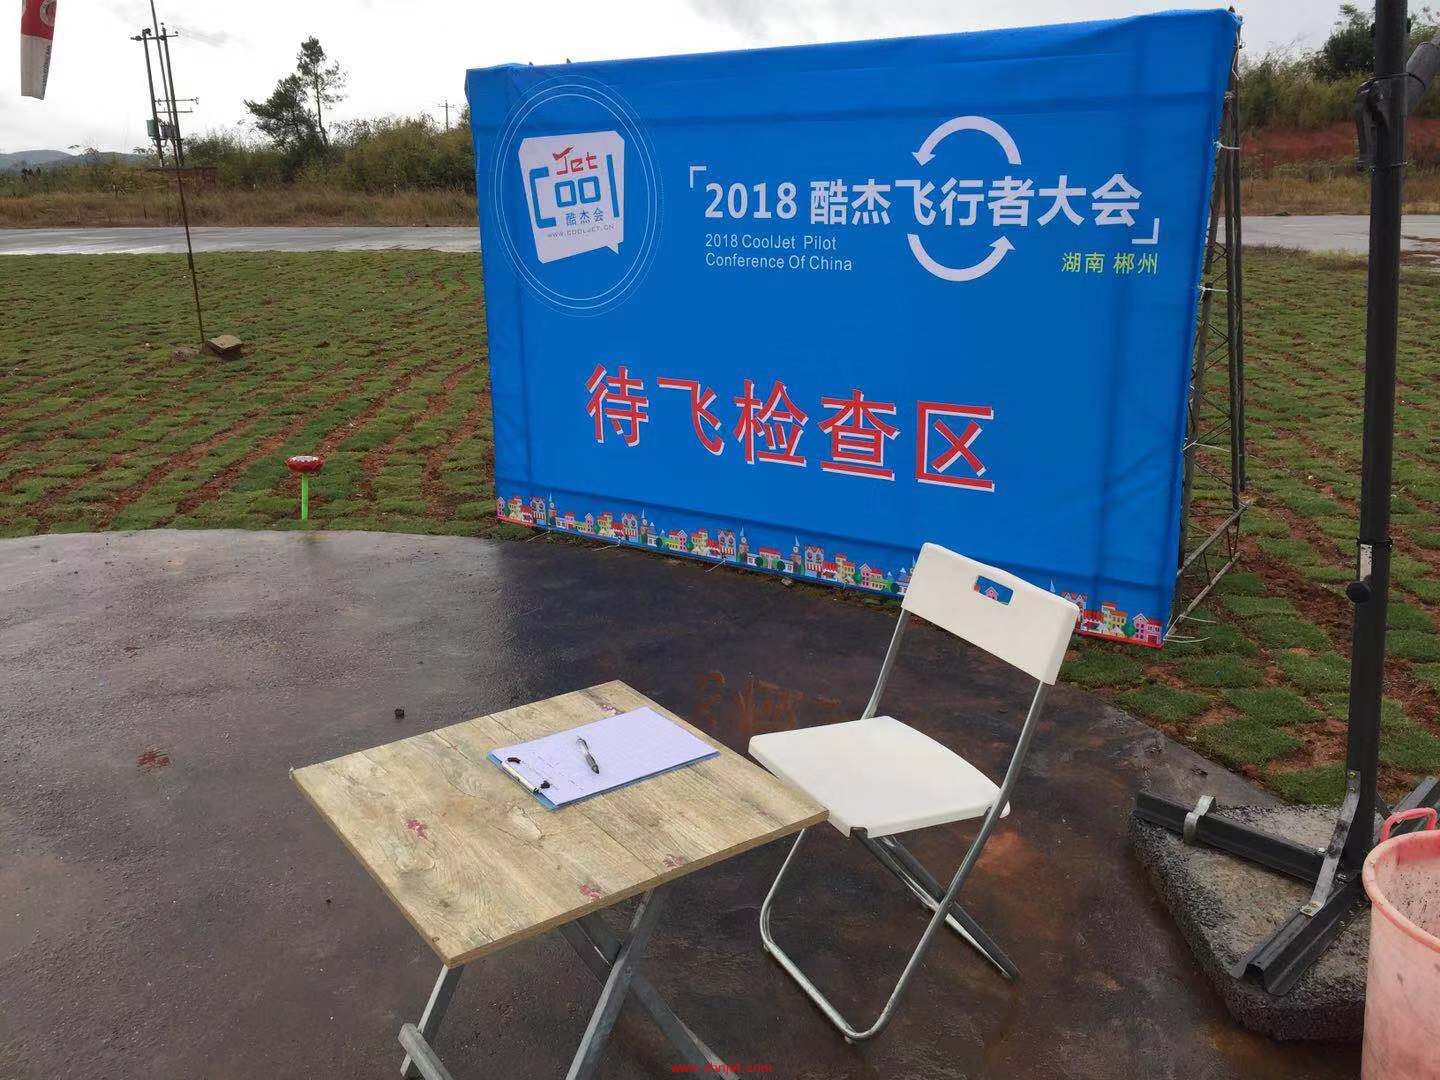 2018酷杰飞行者大会（湖南郴州）